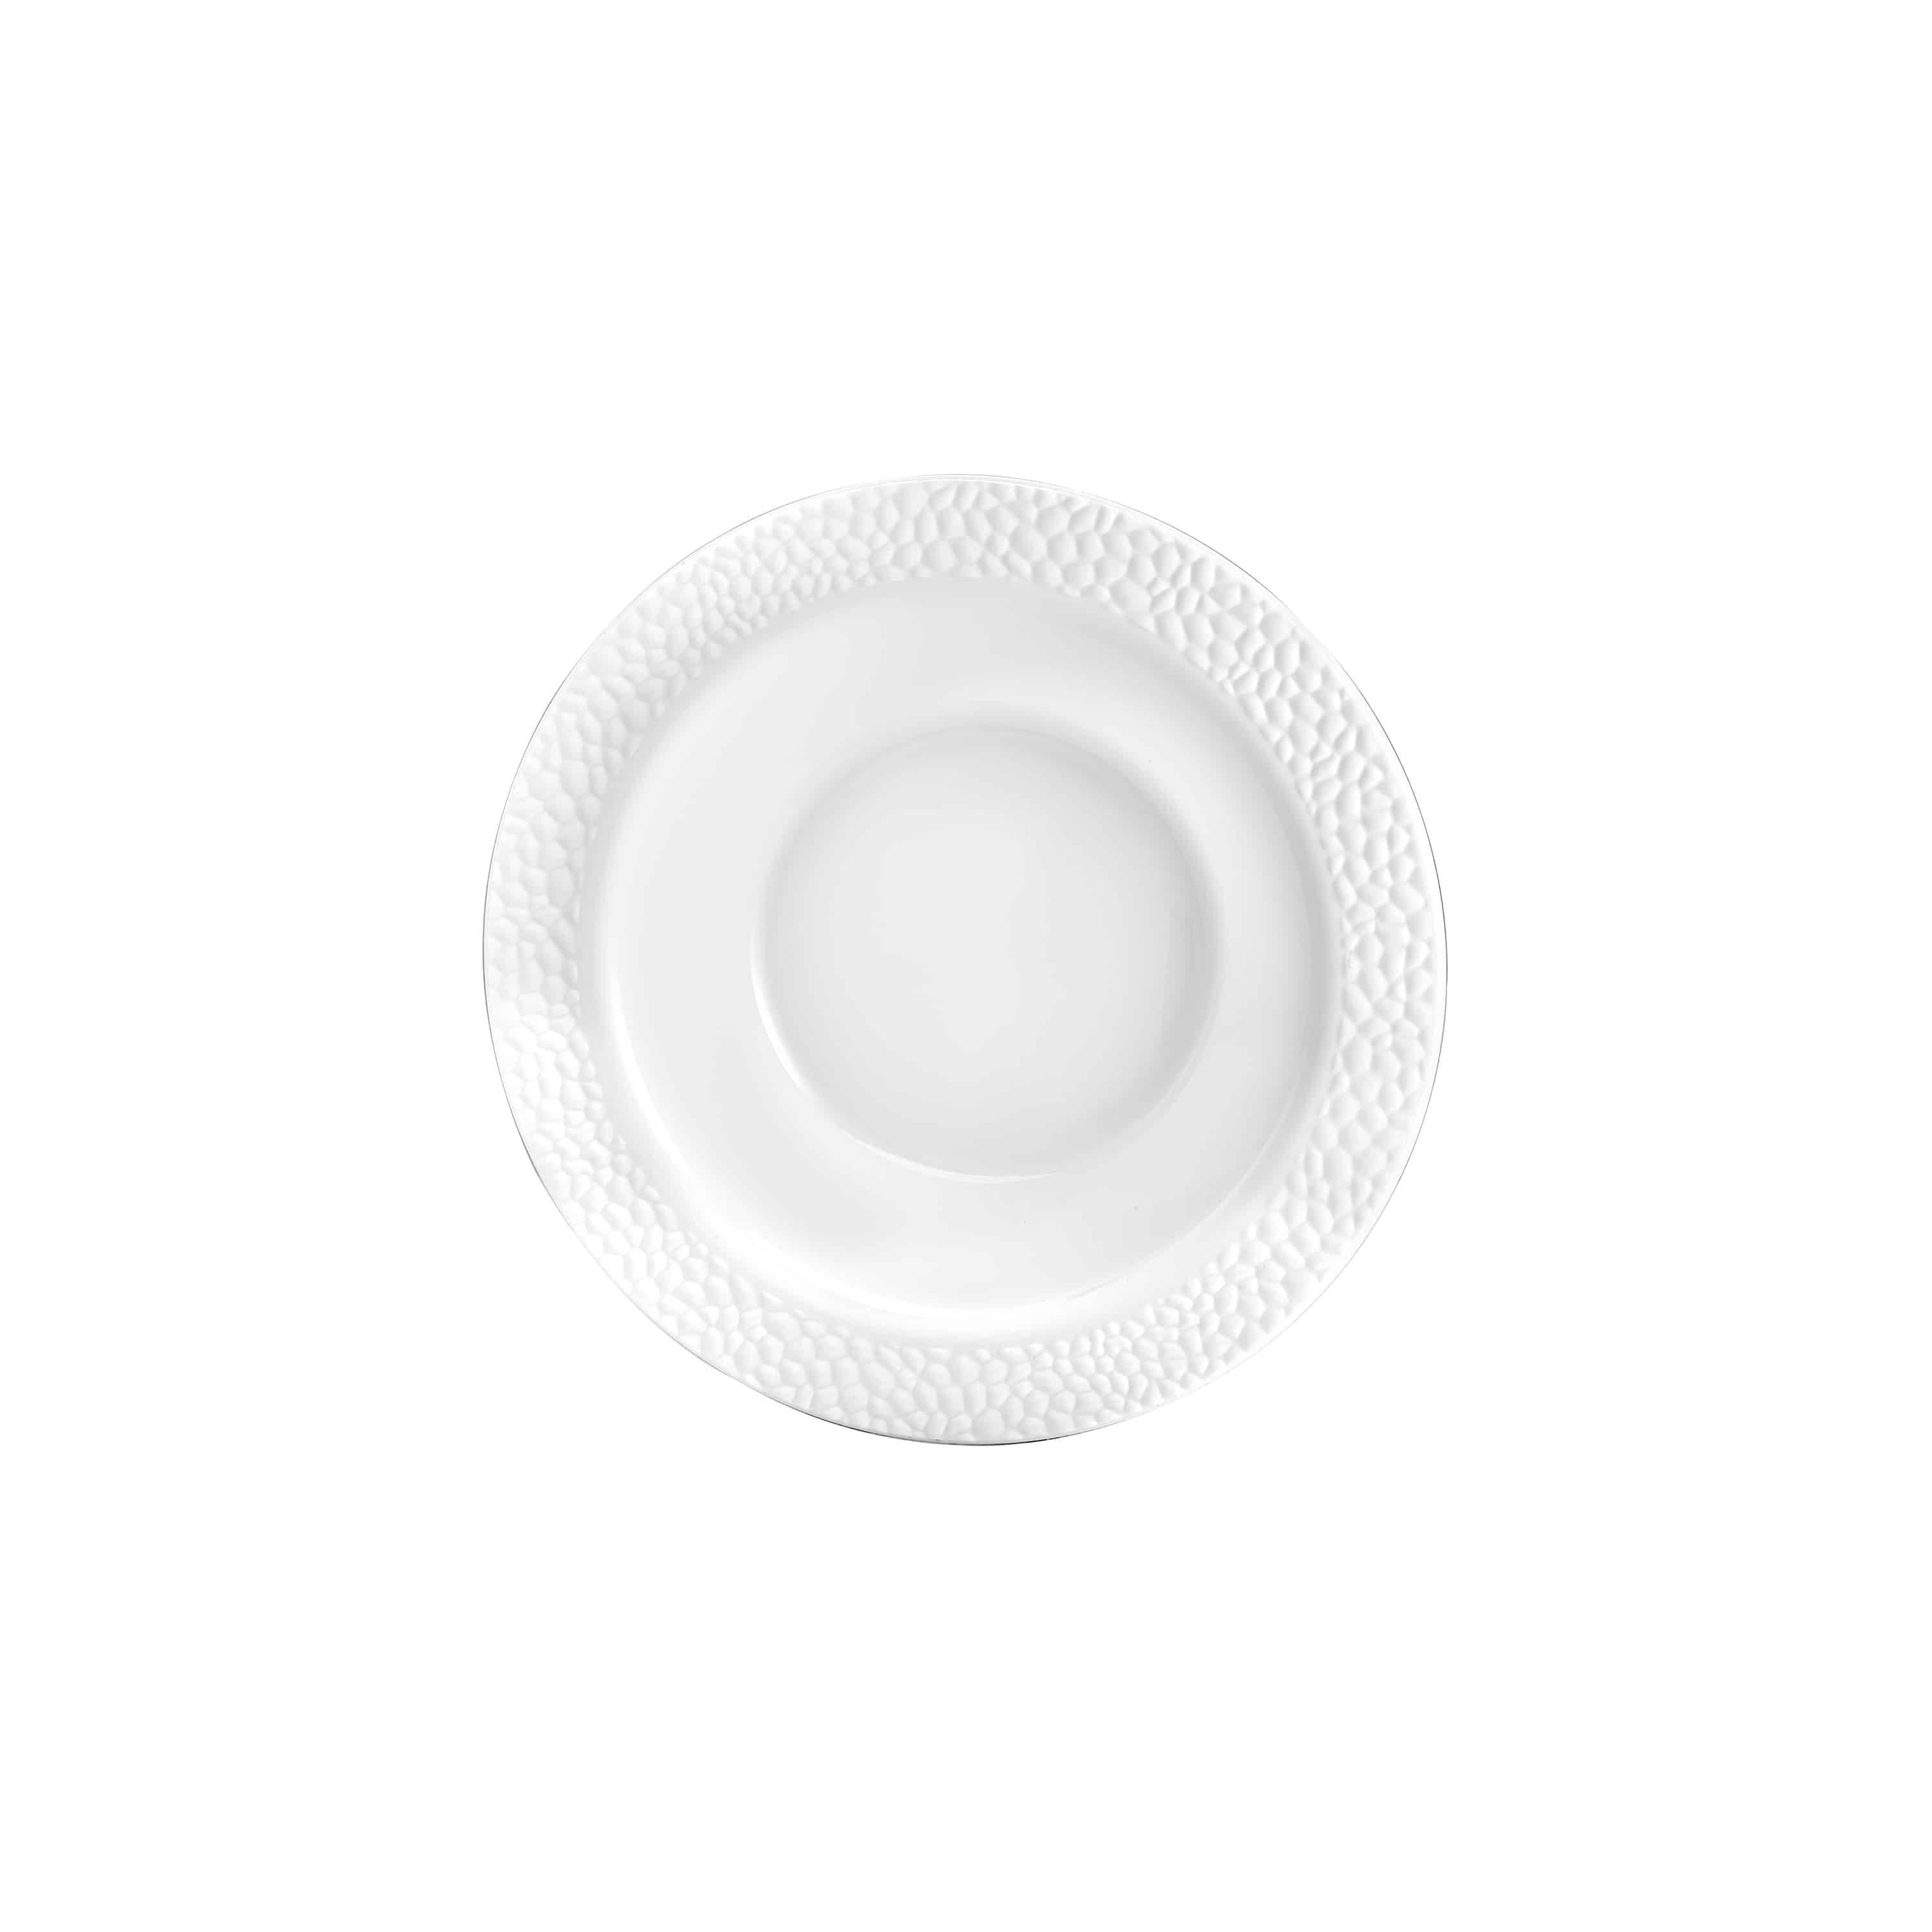 Pebbled Premium Plastic Round Dinnerware